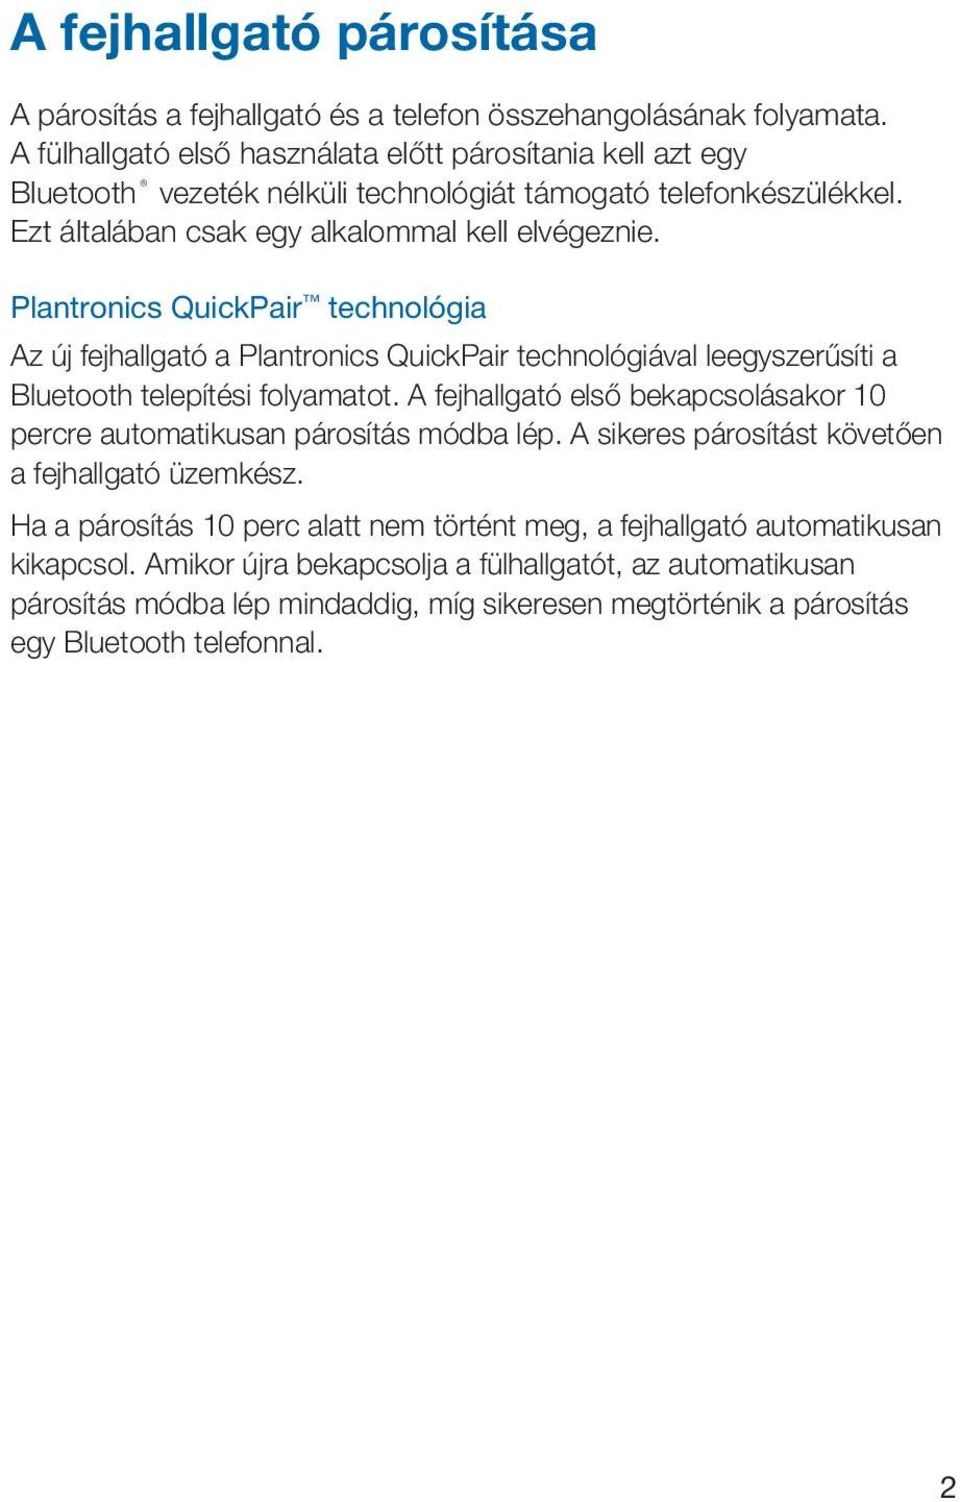 Plantronics QuickPair technológia Az új fejhallgató a Plantronics QuickPair technológiával leegyszerűsíti a Bluetooth telepítési folyamatot.